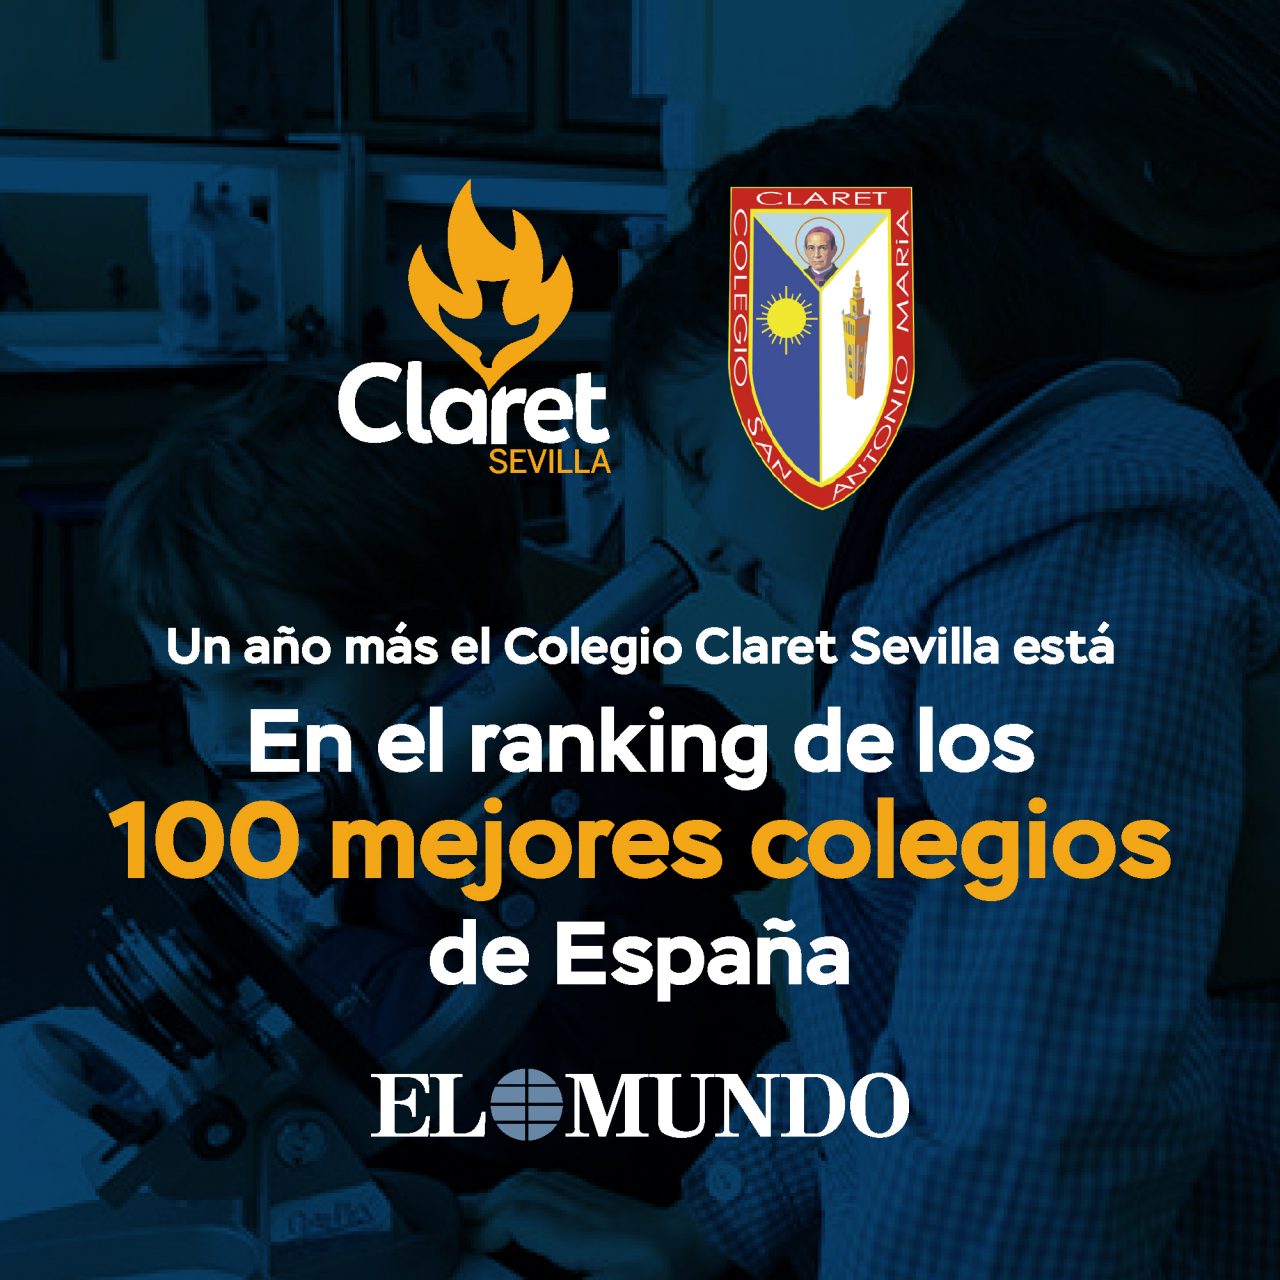 En el ranking de los 100 mejores colegios de España según El Mundo